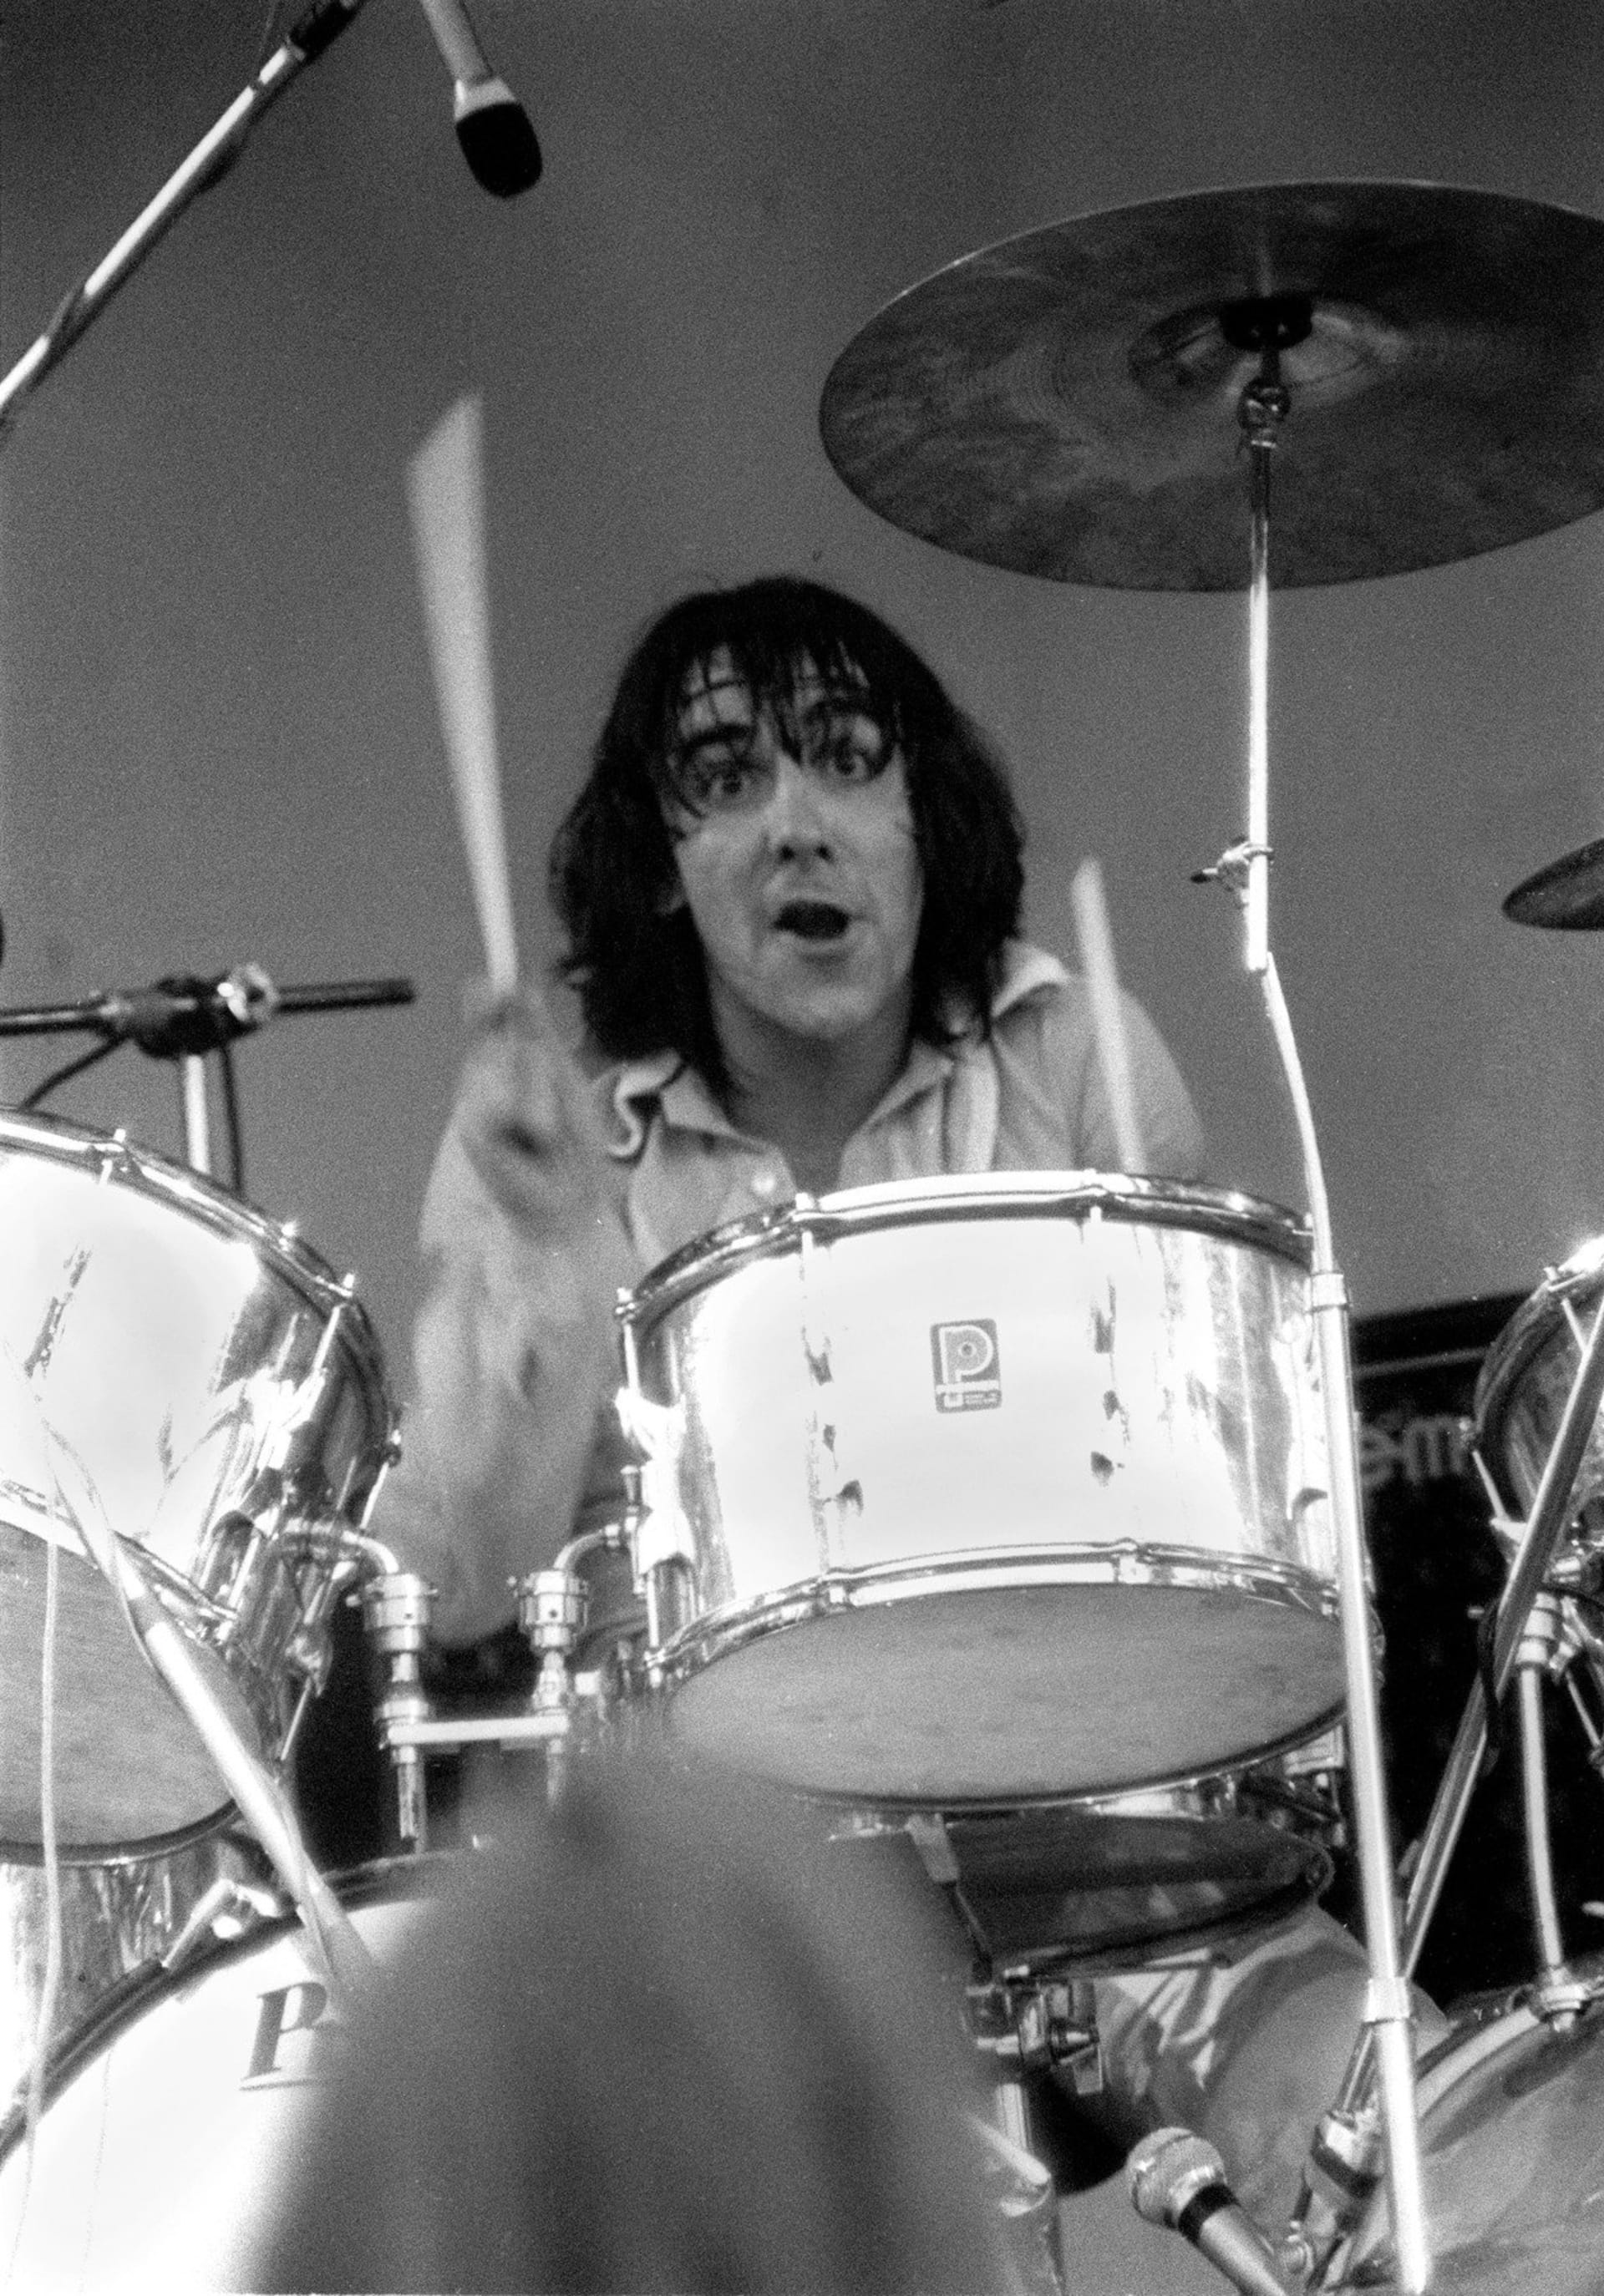 Keith Moon se stal velmi rychle hvězdným hráčem na bicí, neméně vražedné tempo měl i jeho život.